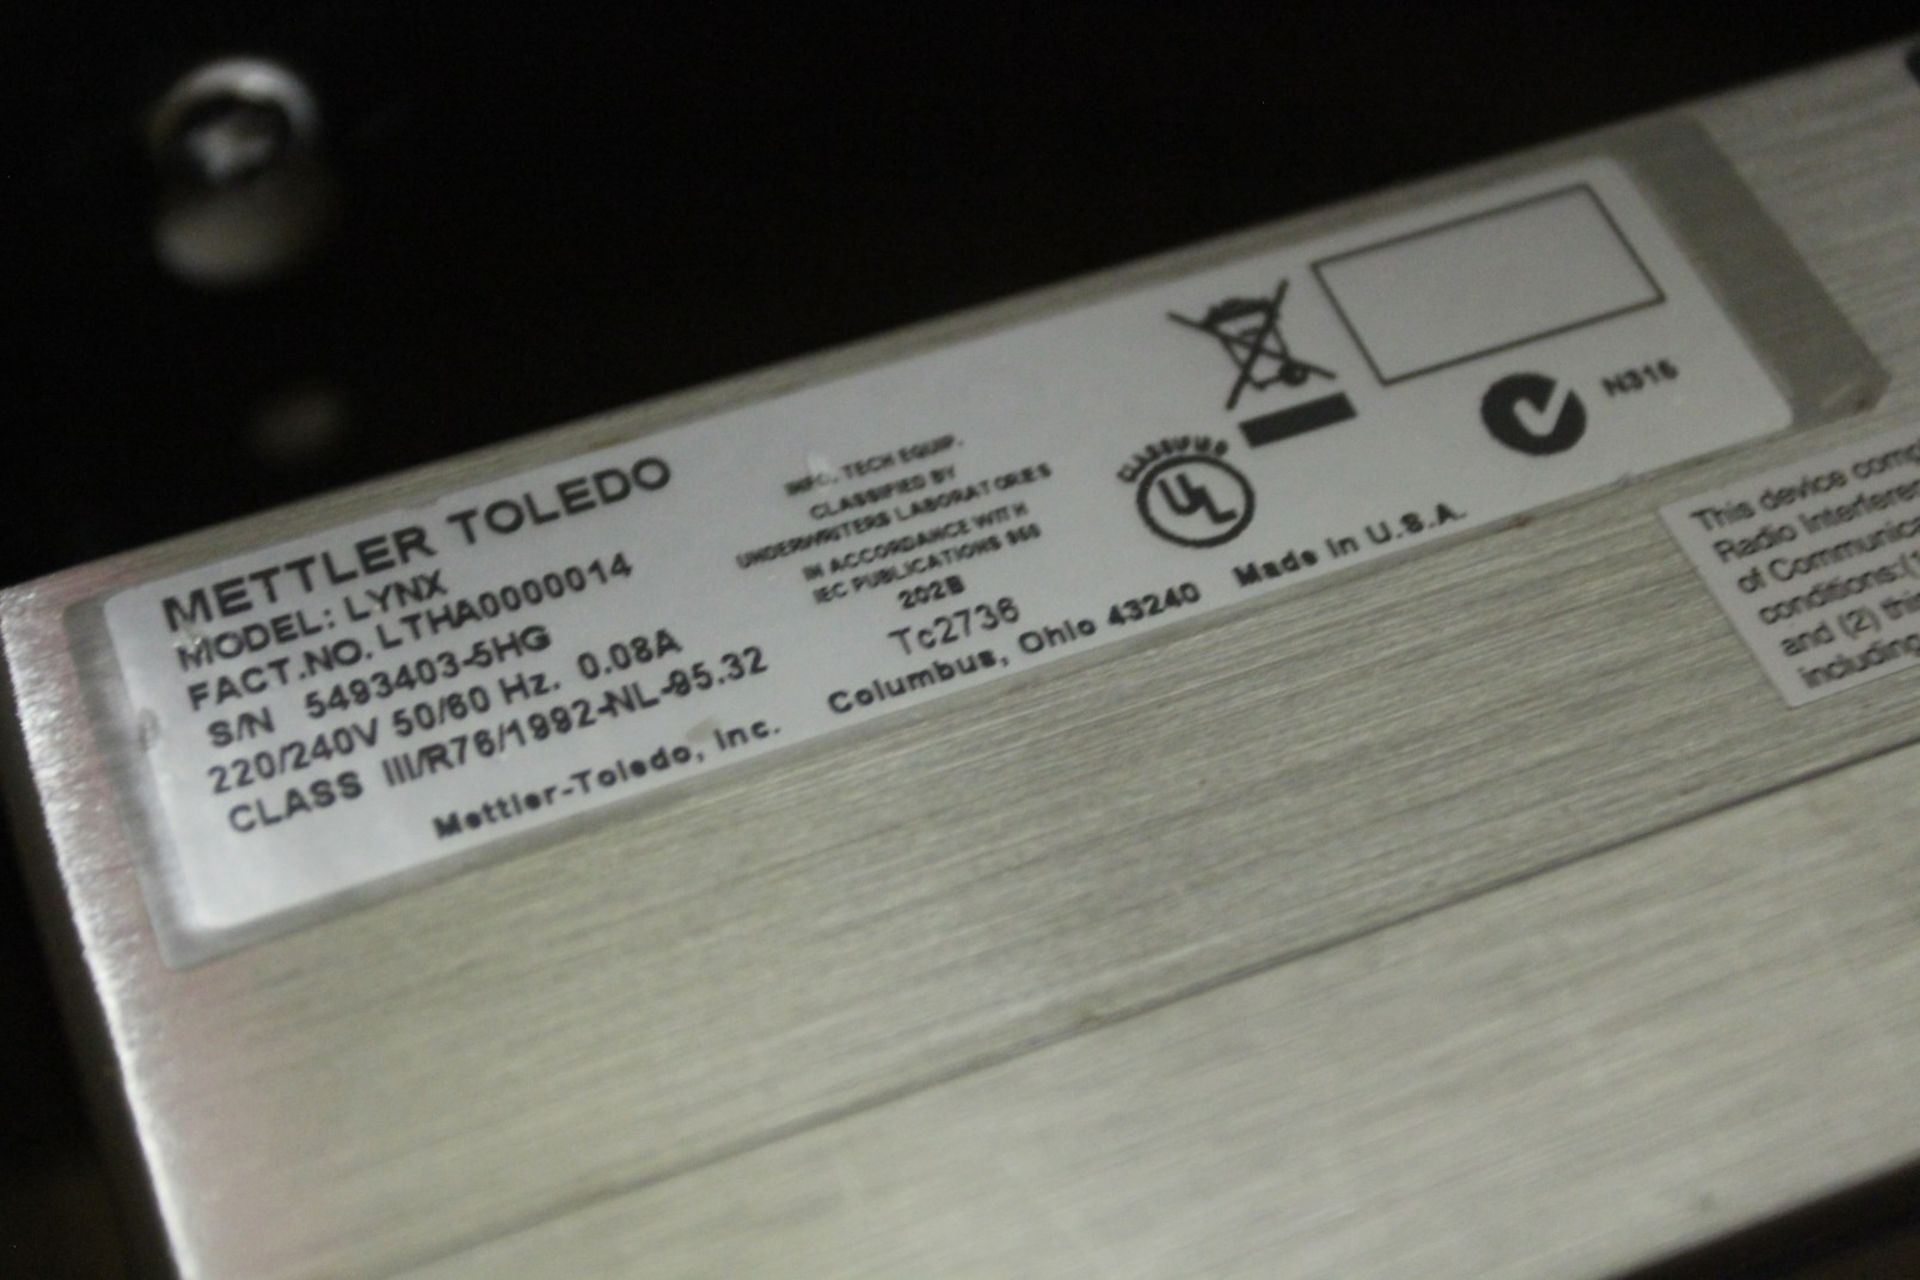 800 kg Stainless Steel Floor Scale w/ Mettler Toledo Lynx Digital Readout, s/n 5493403-5HG - Image 4 of 5